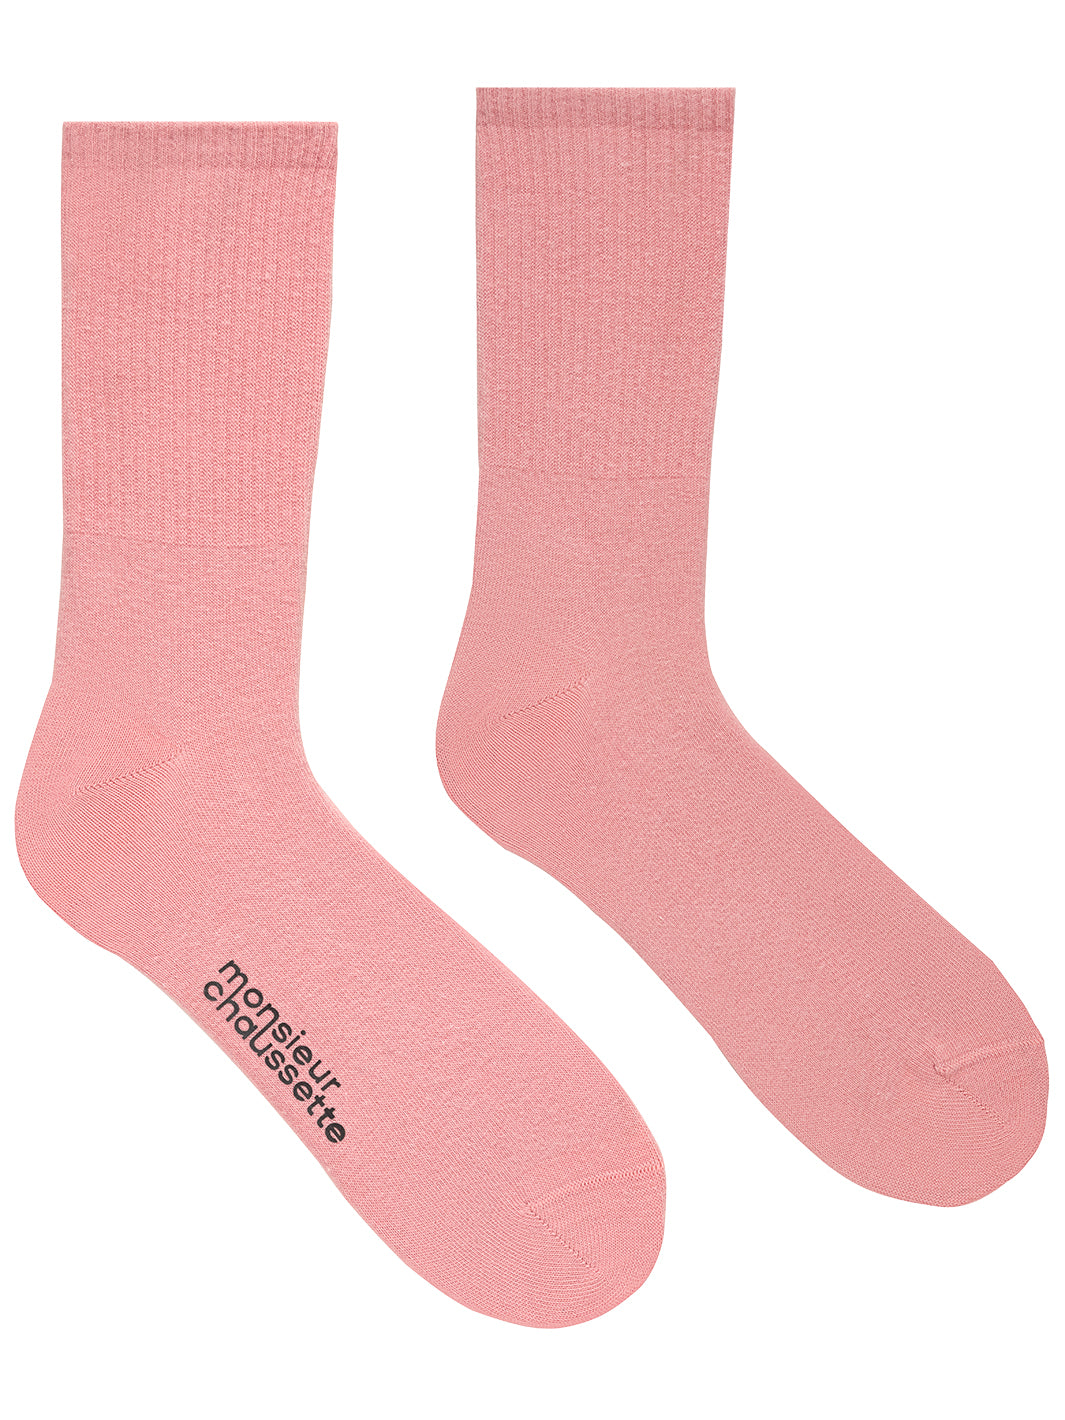 Unıcolor-Pınk Long Socks